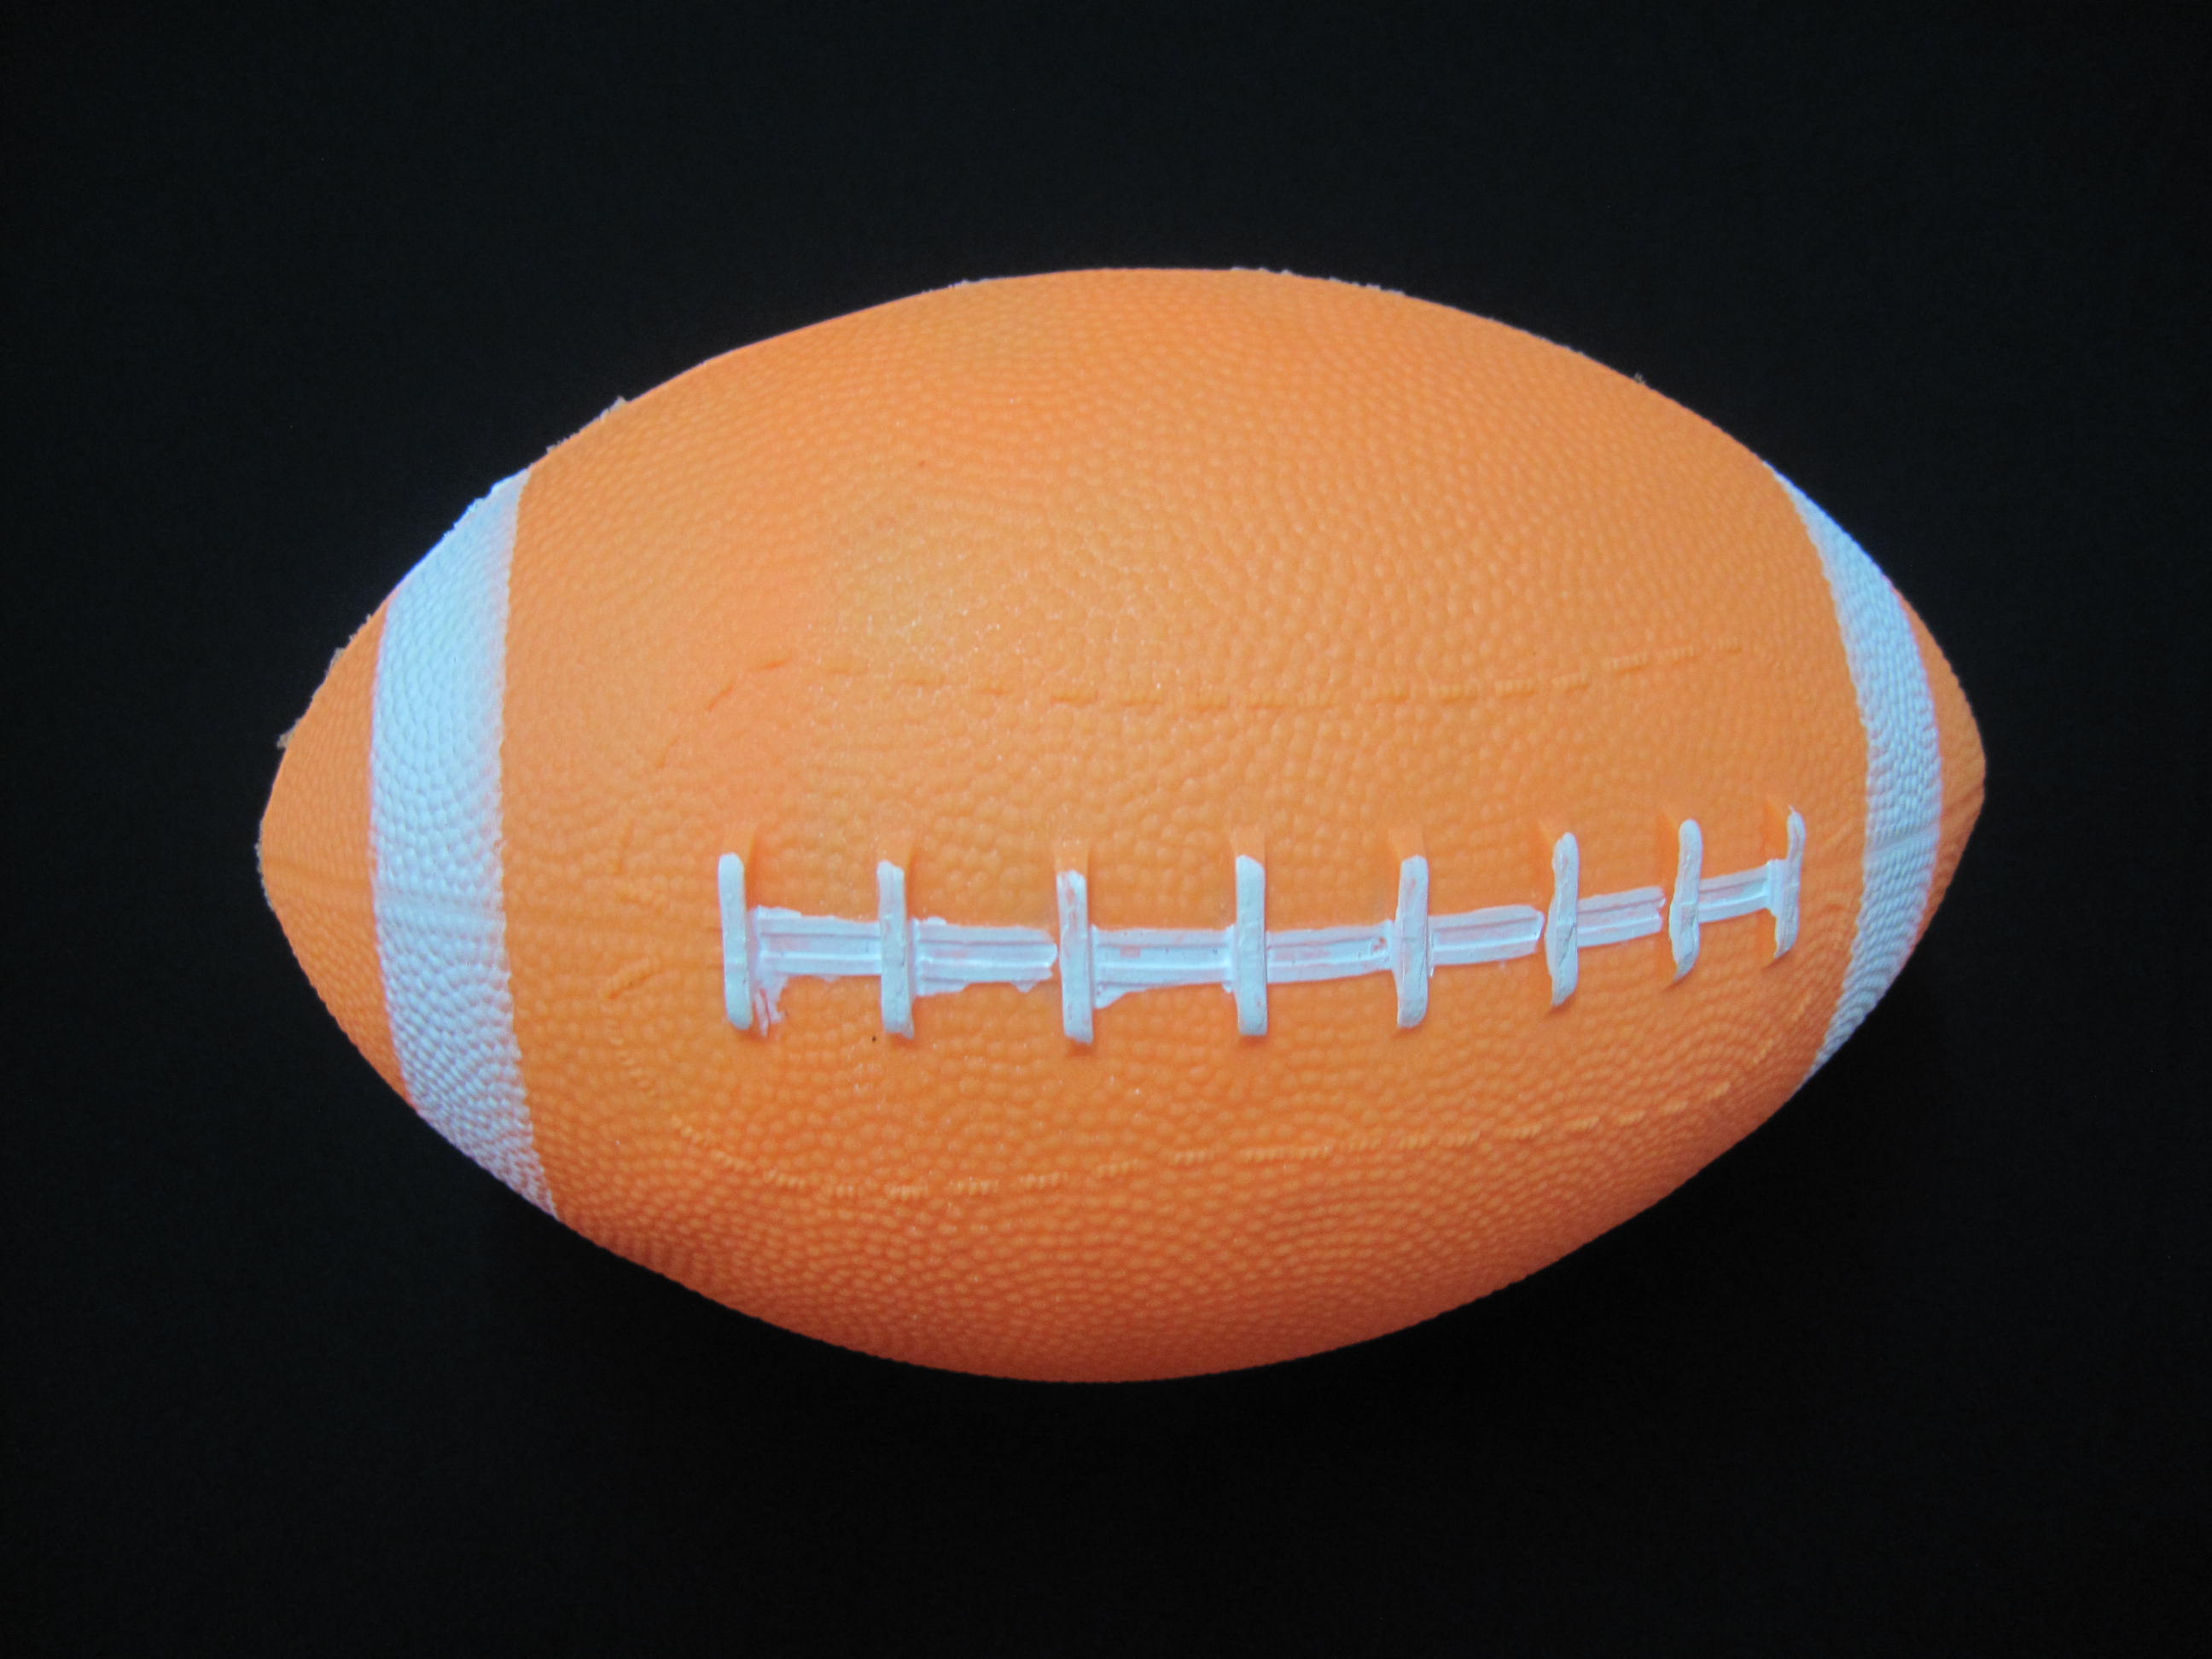 Piłka do futbolu amerykańskiego / rugby – PVC na zamówienie, dostępna w różnych wzorach